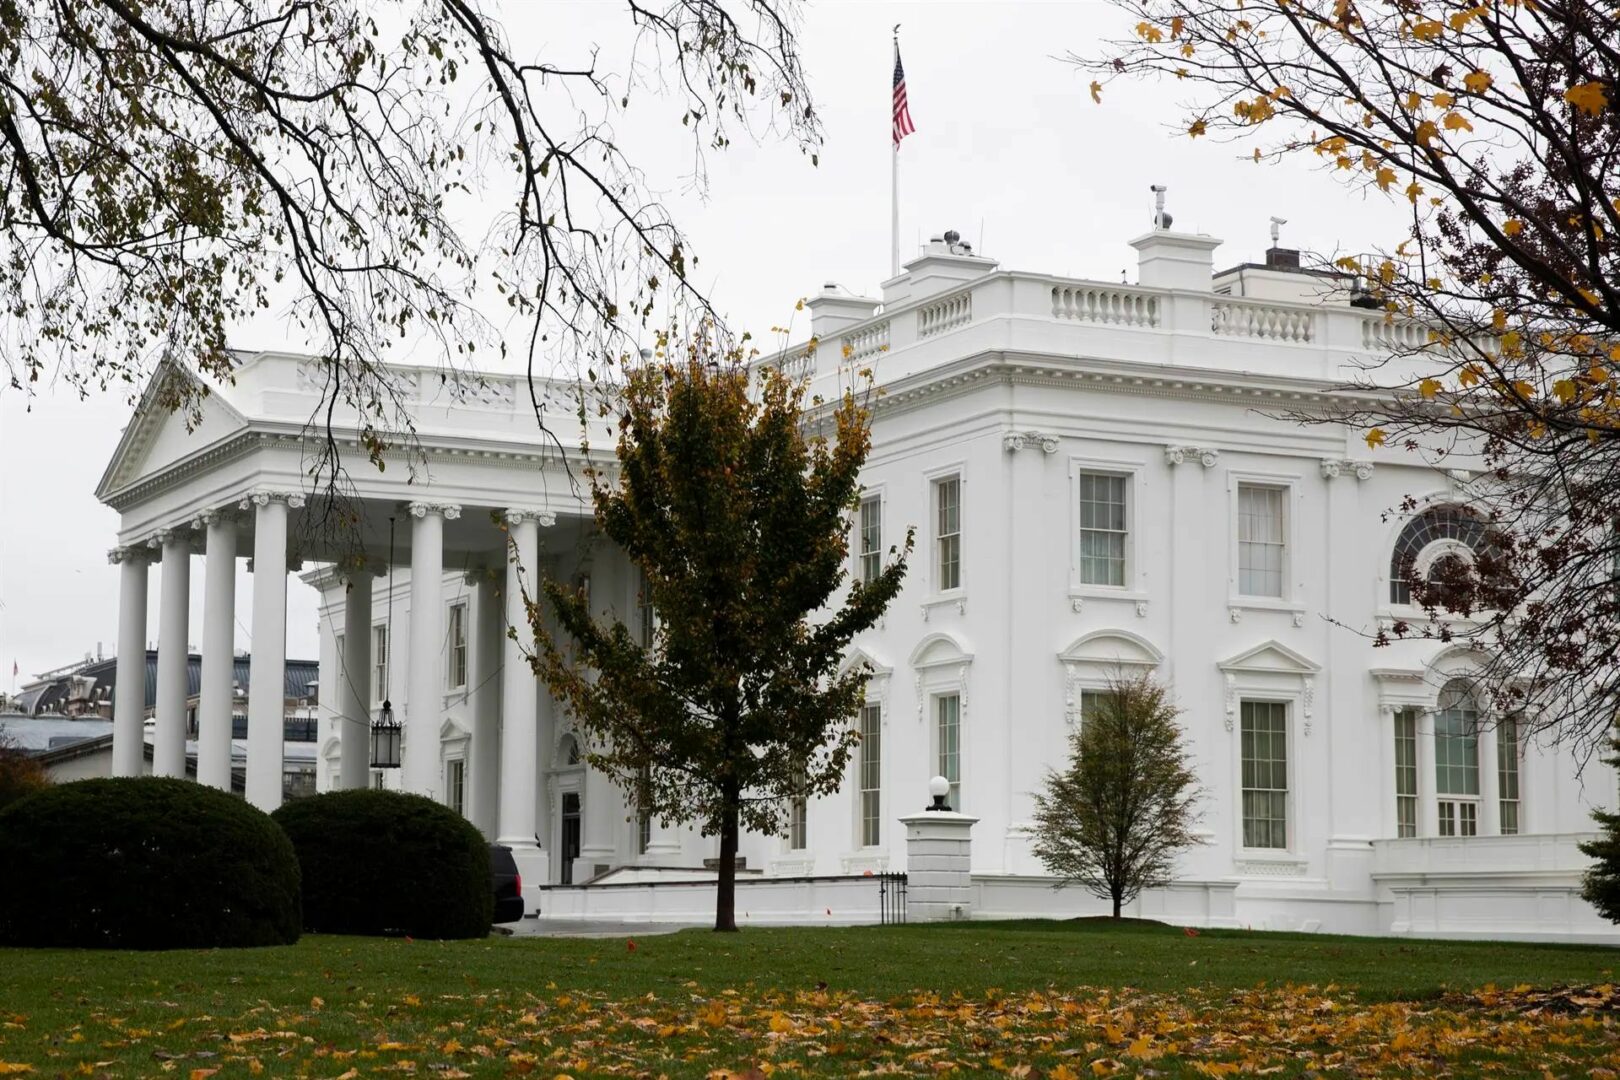 Tres fallecidos por el impacto de un rayo cerca de la Casa Blanca